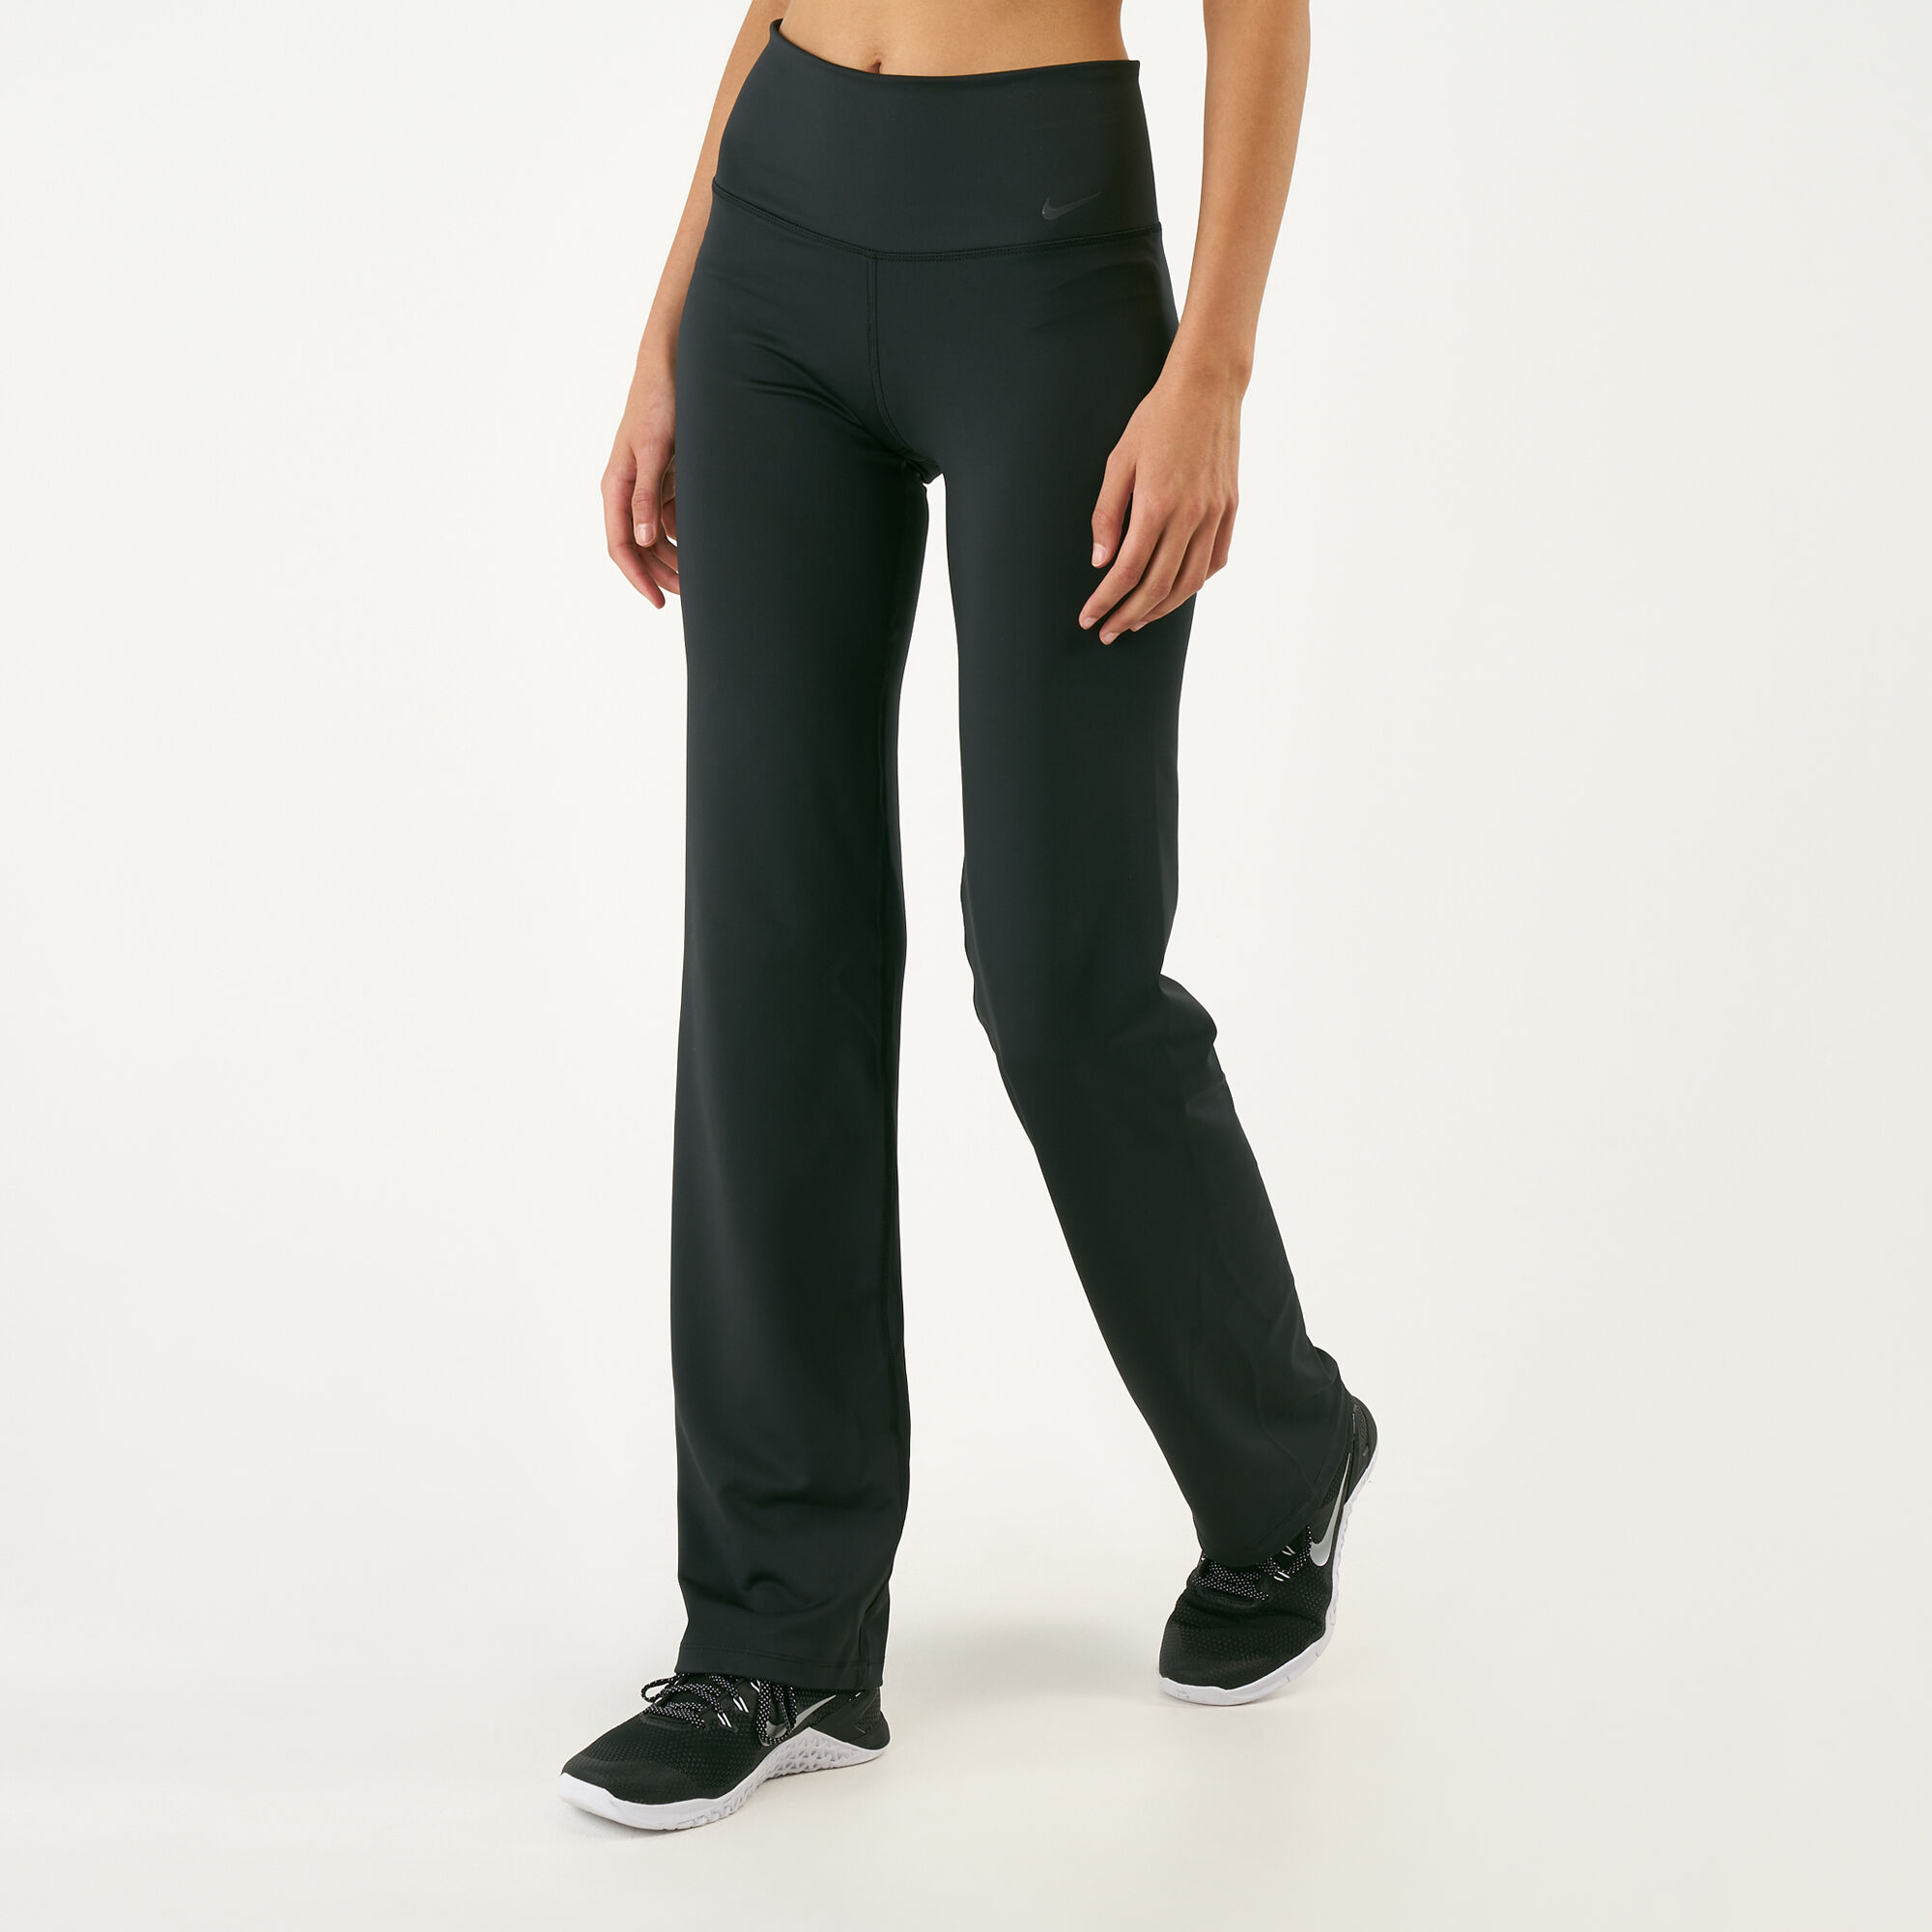 Women's Black Nike Gym Pants | Life Style Sports